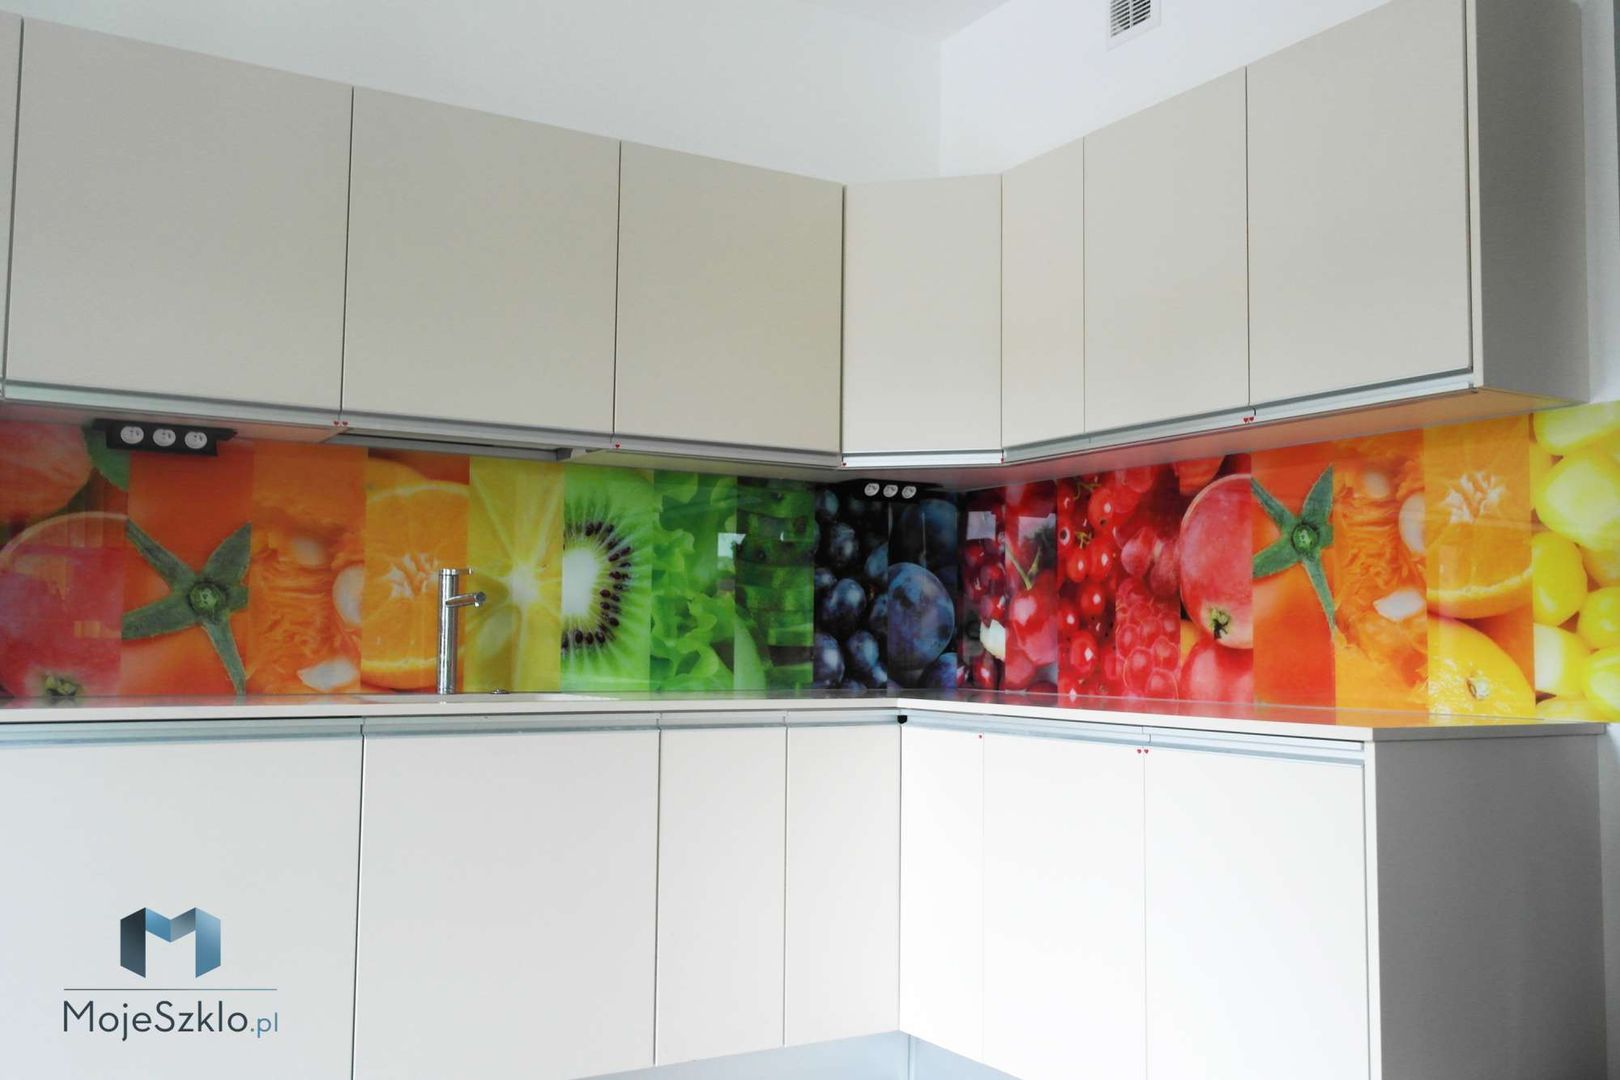 Szkło z grafiką - owoce i warzywa, Moje Szkło Moje Szkło Dinding & Lantai Modern Kaca Wall & floor coverings